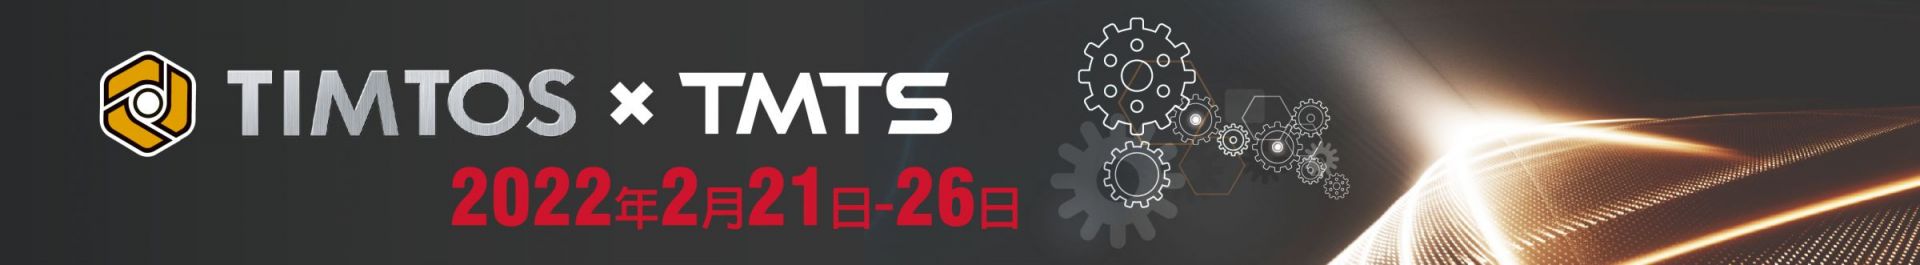 TIMTOS x TMTS 2022 معرض تايبيه الدولي للأدوات الآلية